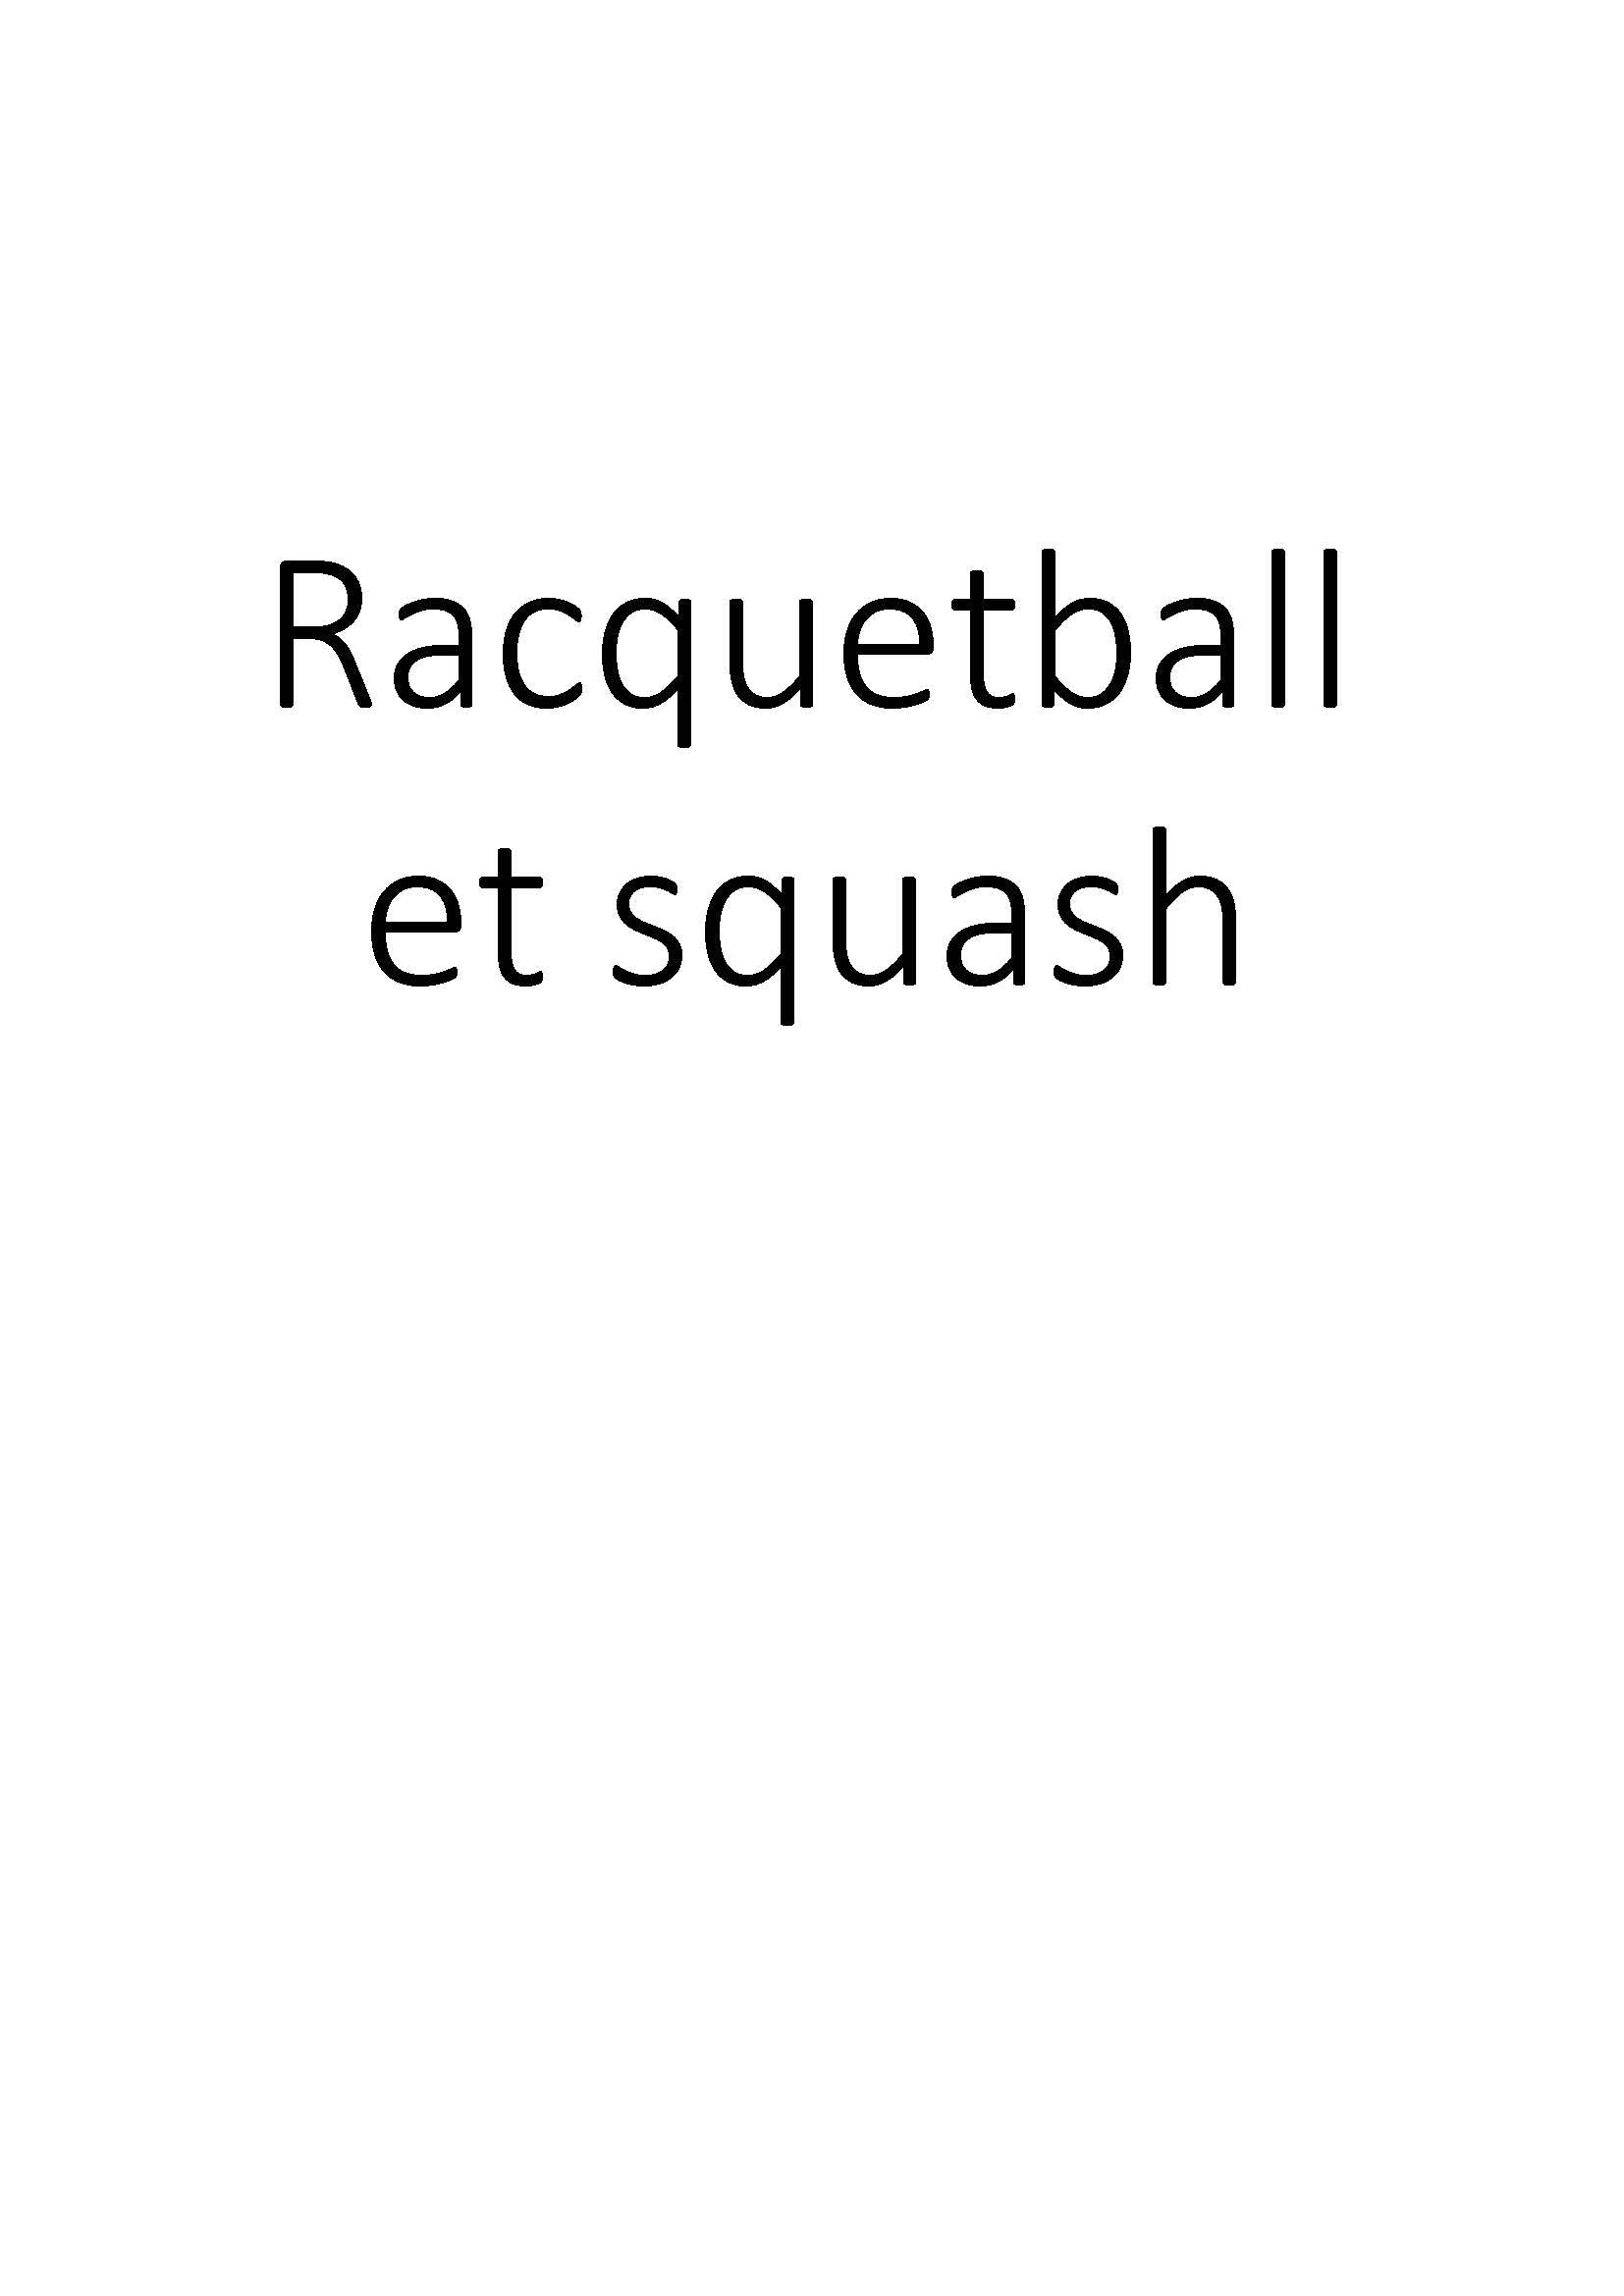 Racquetball et squash clicktofournisseur.com